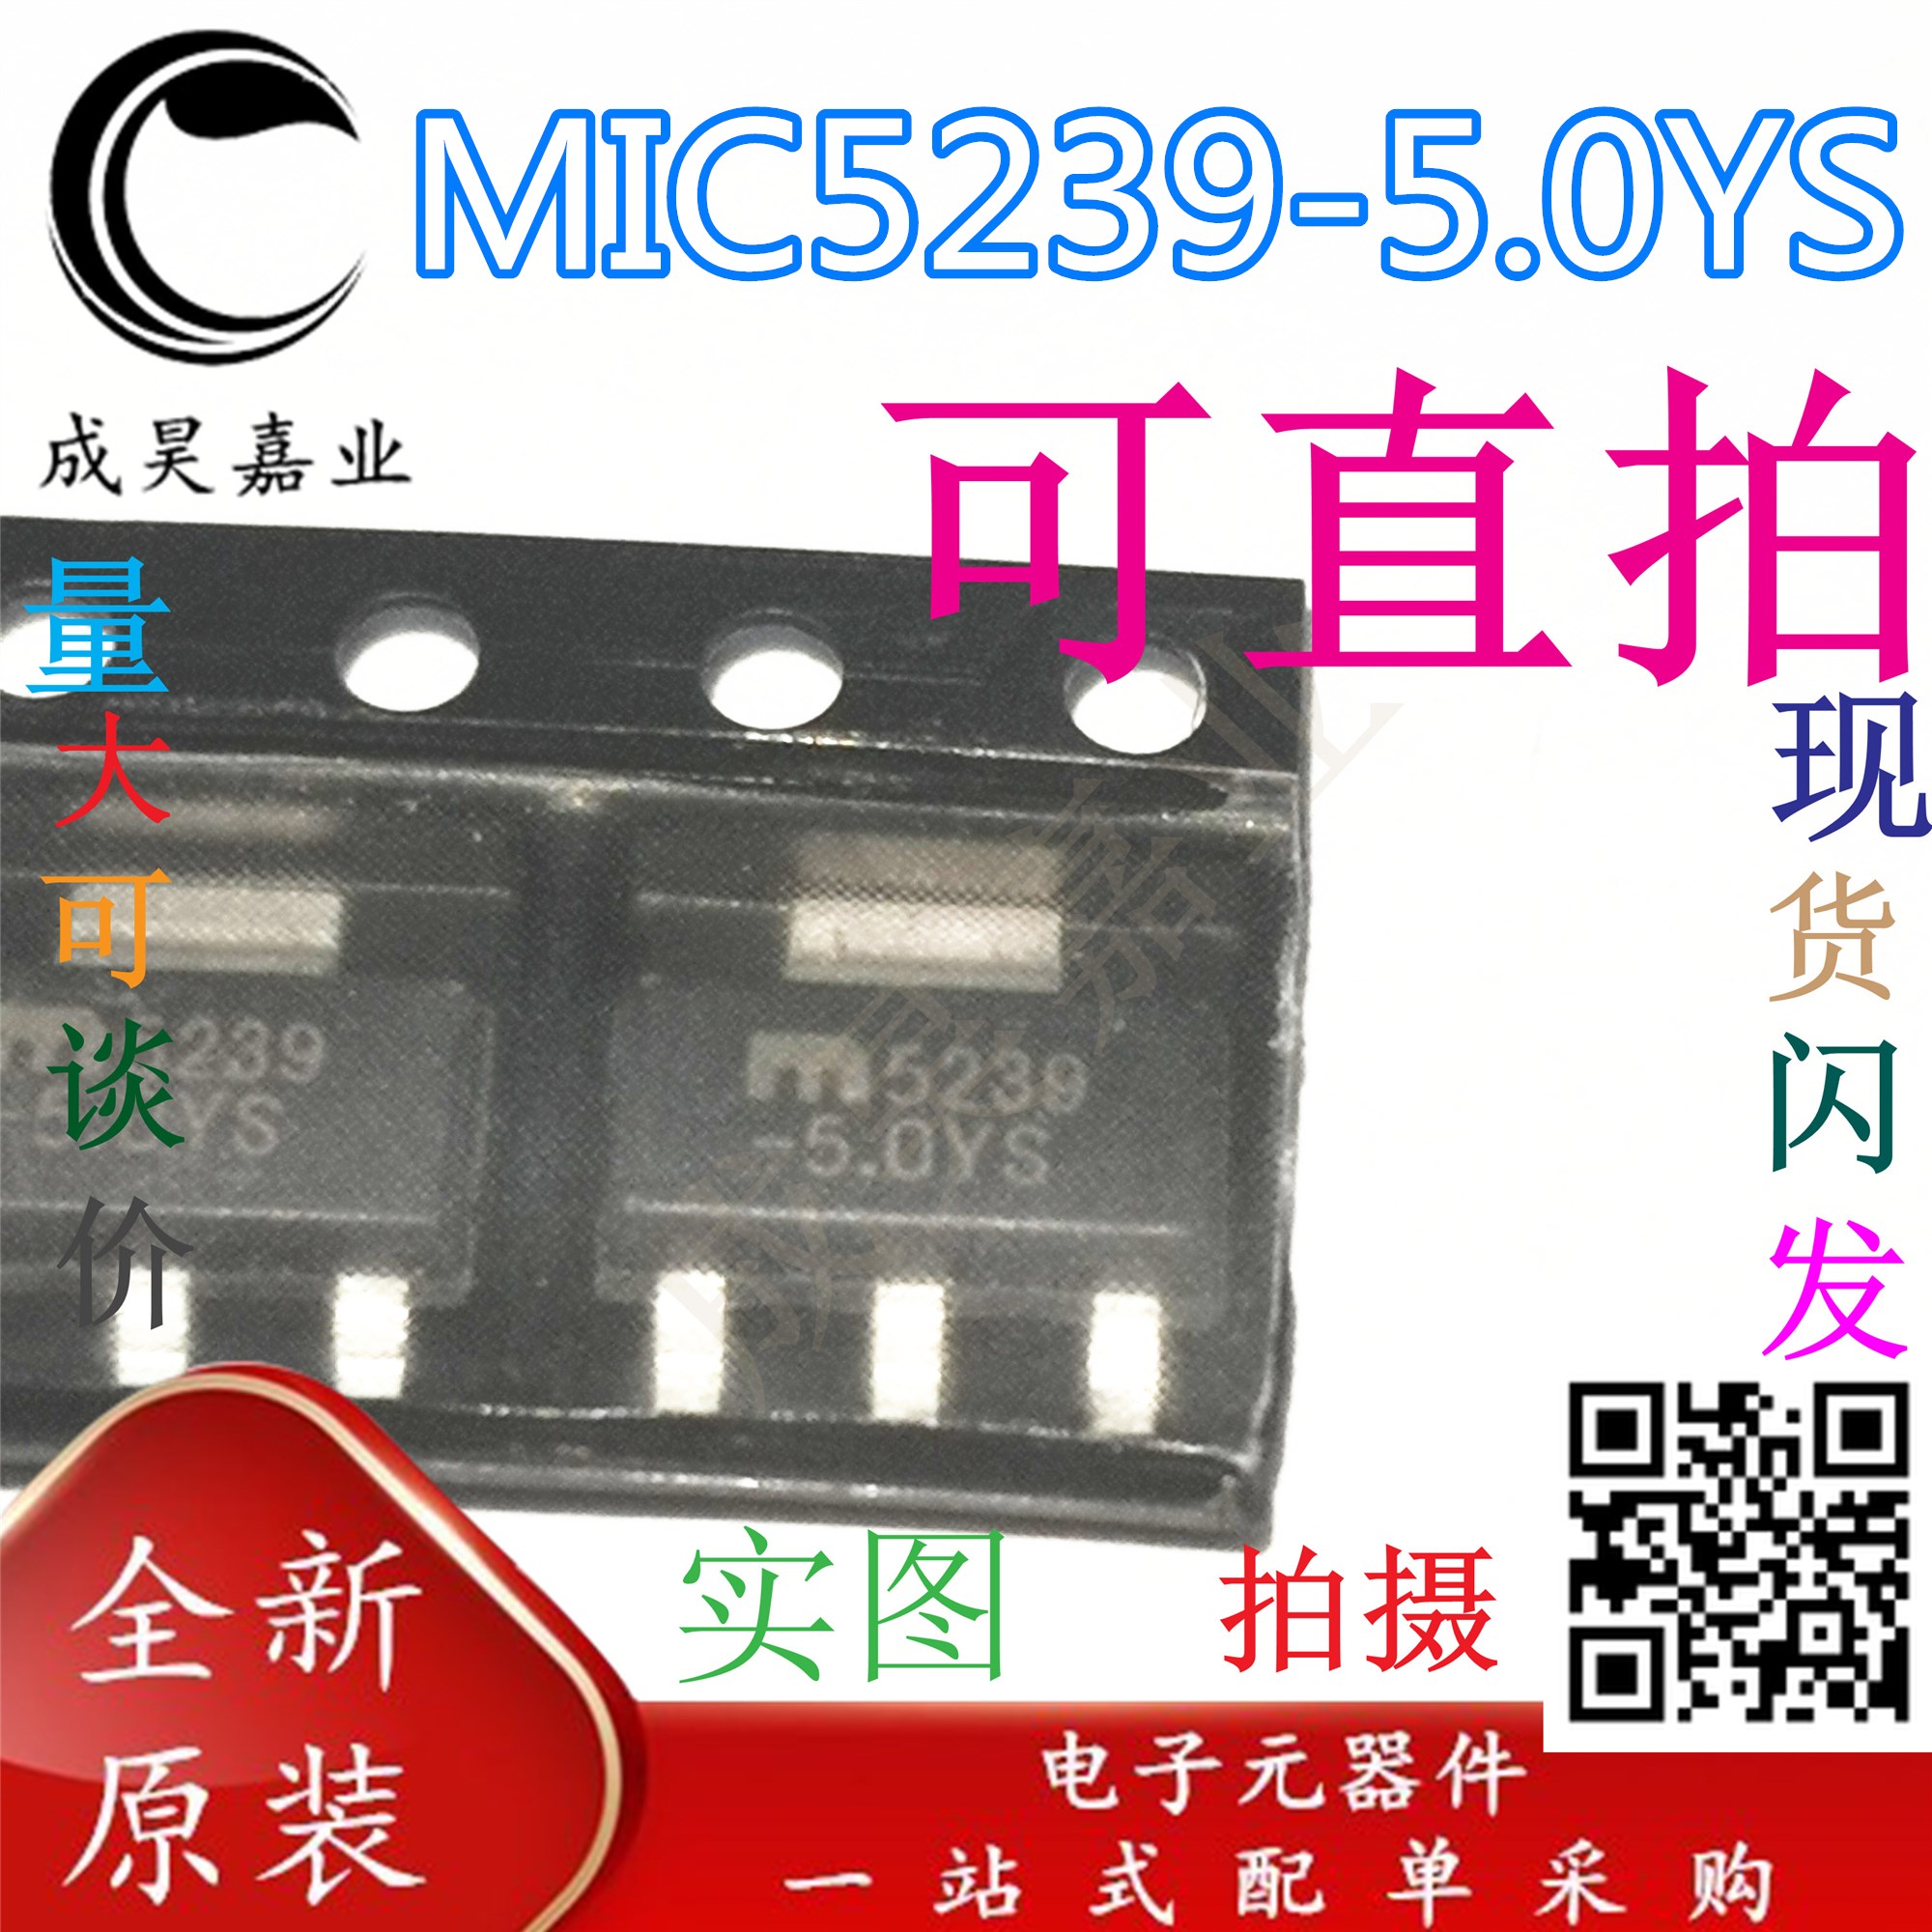 mic5239-新人首单立减十元-2022年7月|淘宝海外